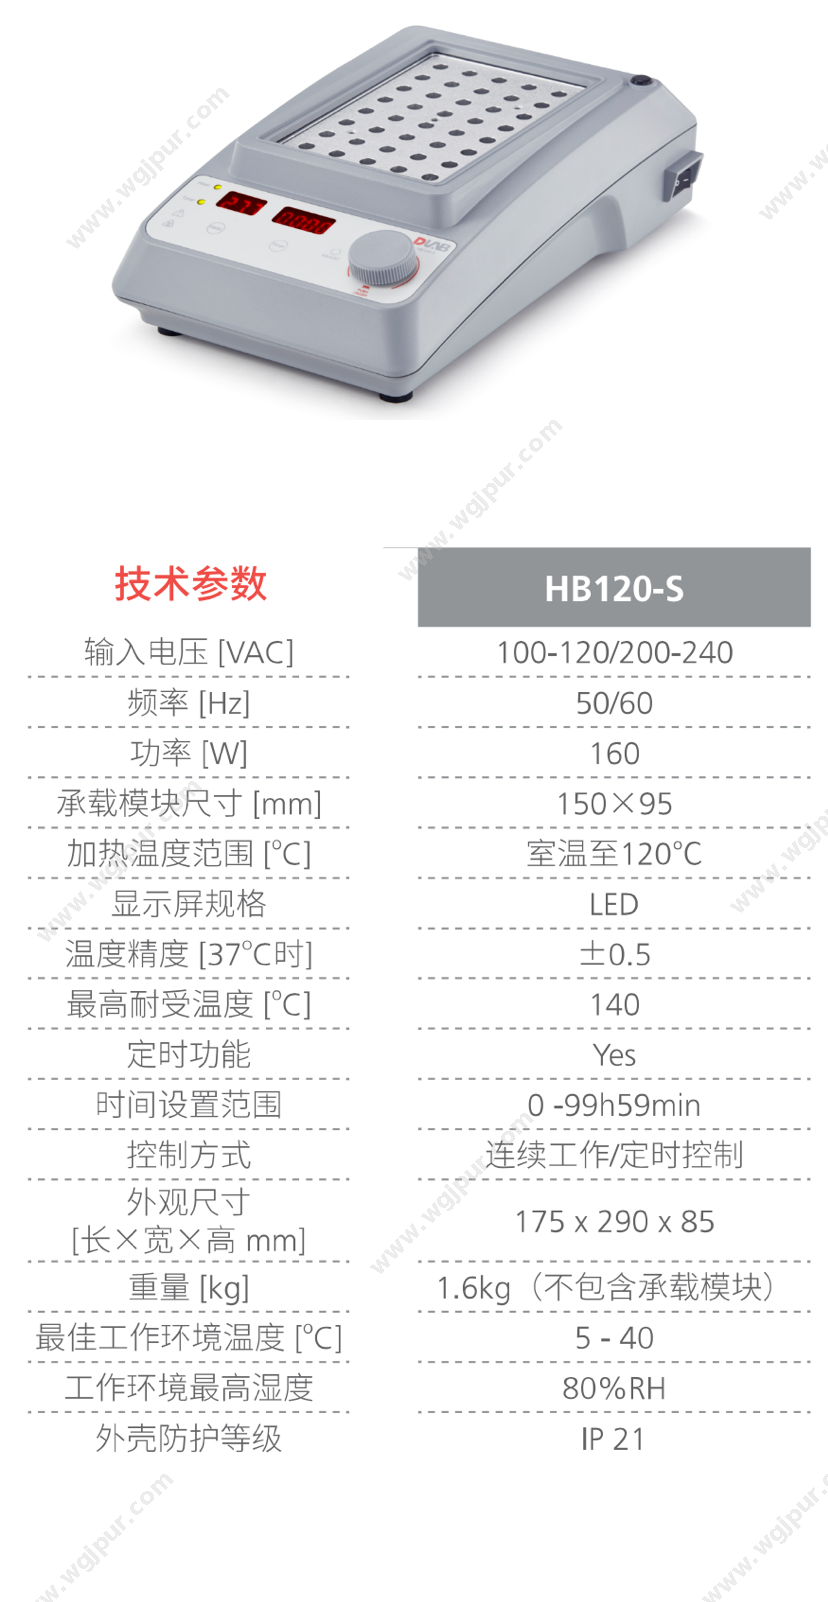 大龙 HB120-S含一块金属模块 体外诊断